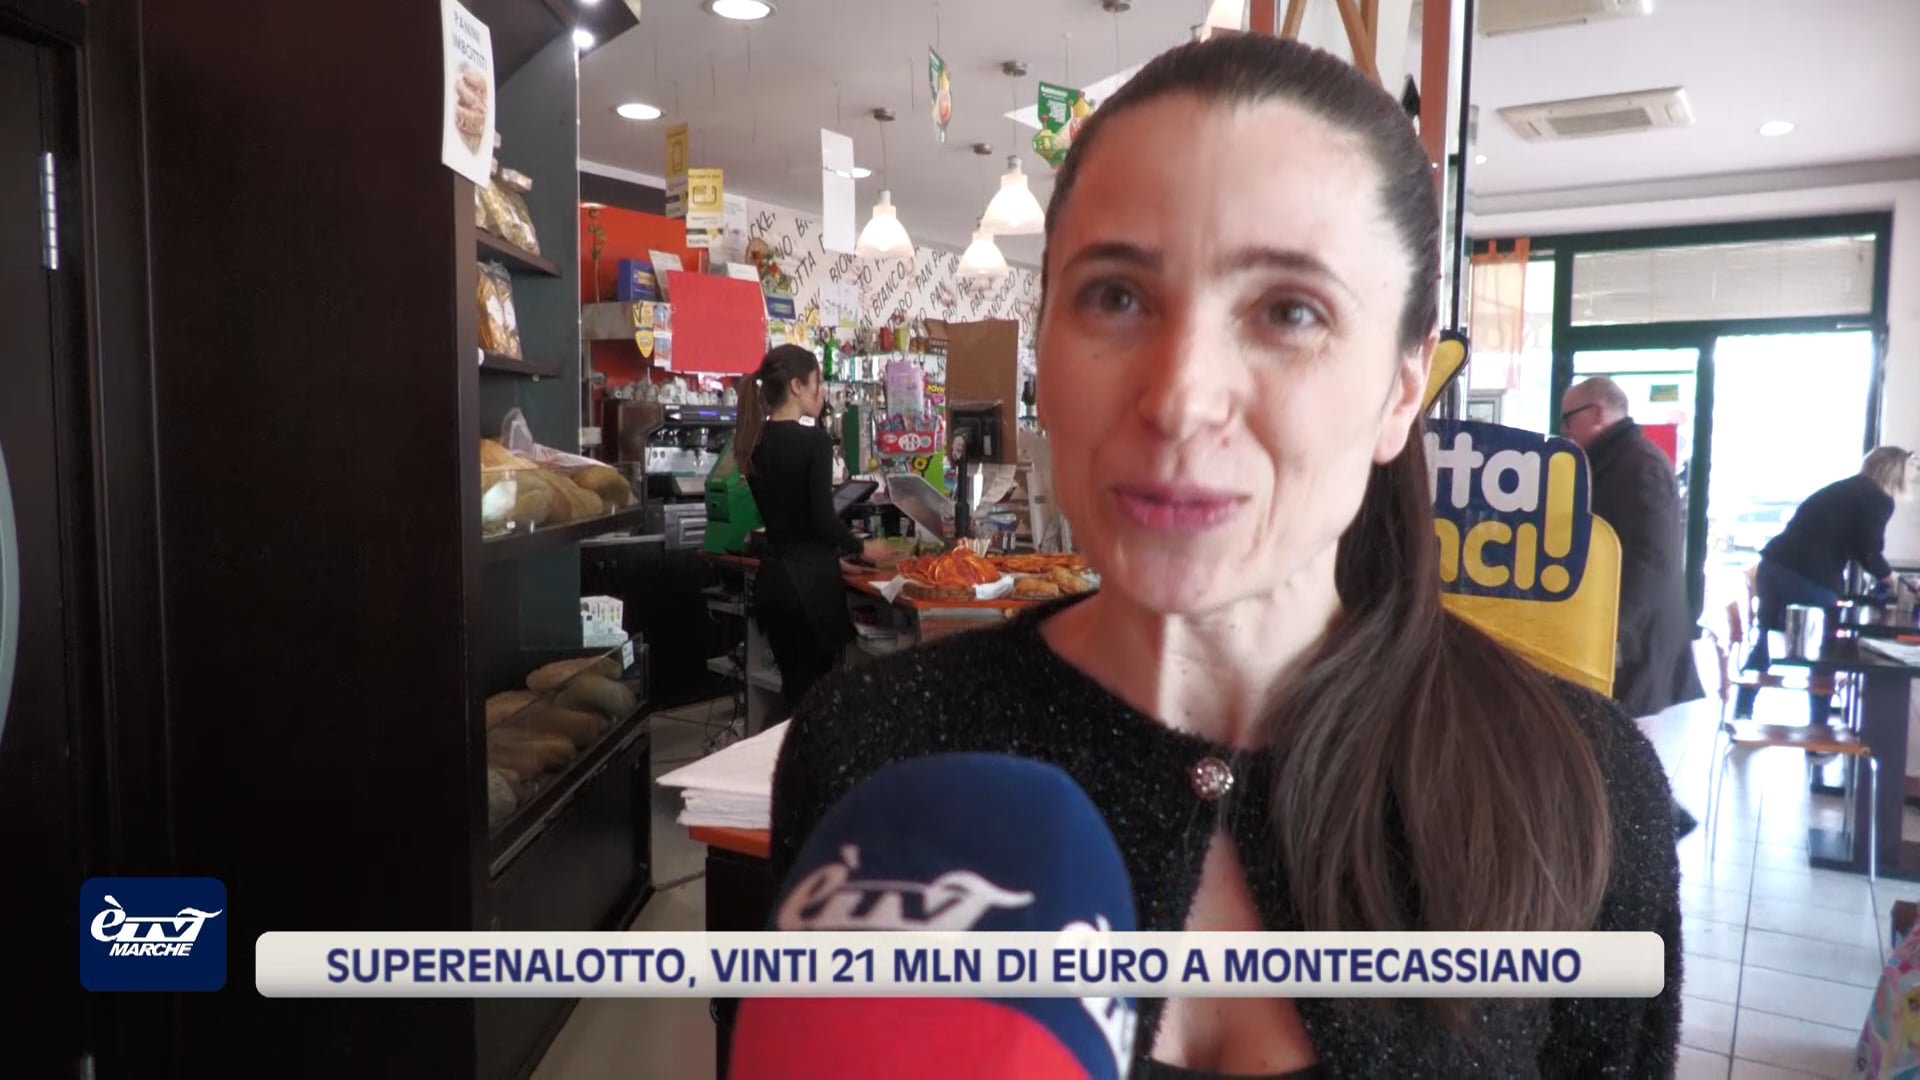 Superenalotto, vinti 21 mln di euro a Montecassiano - VIDEO